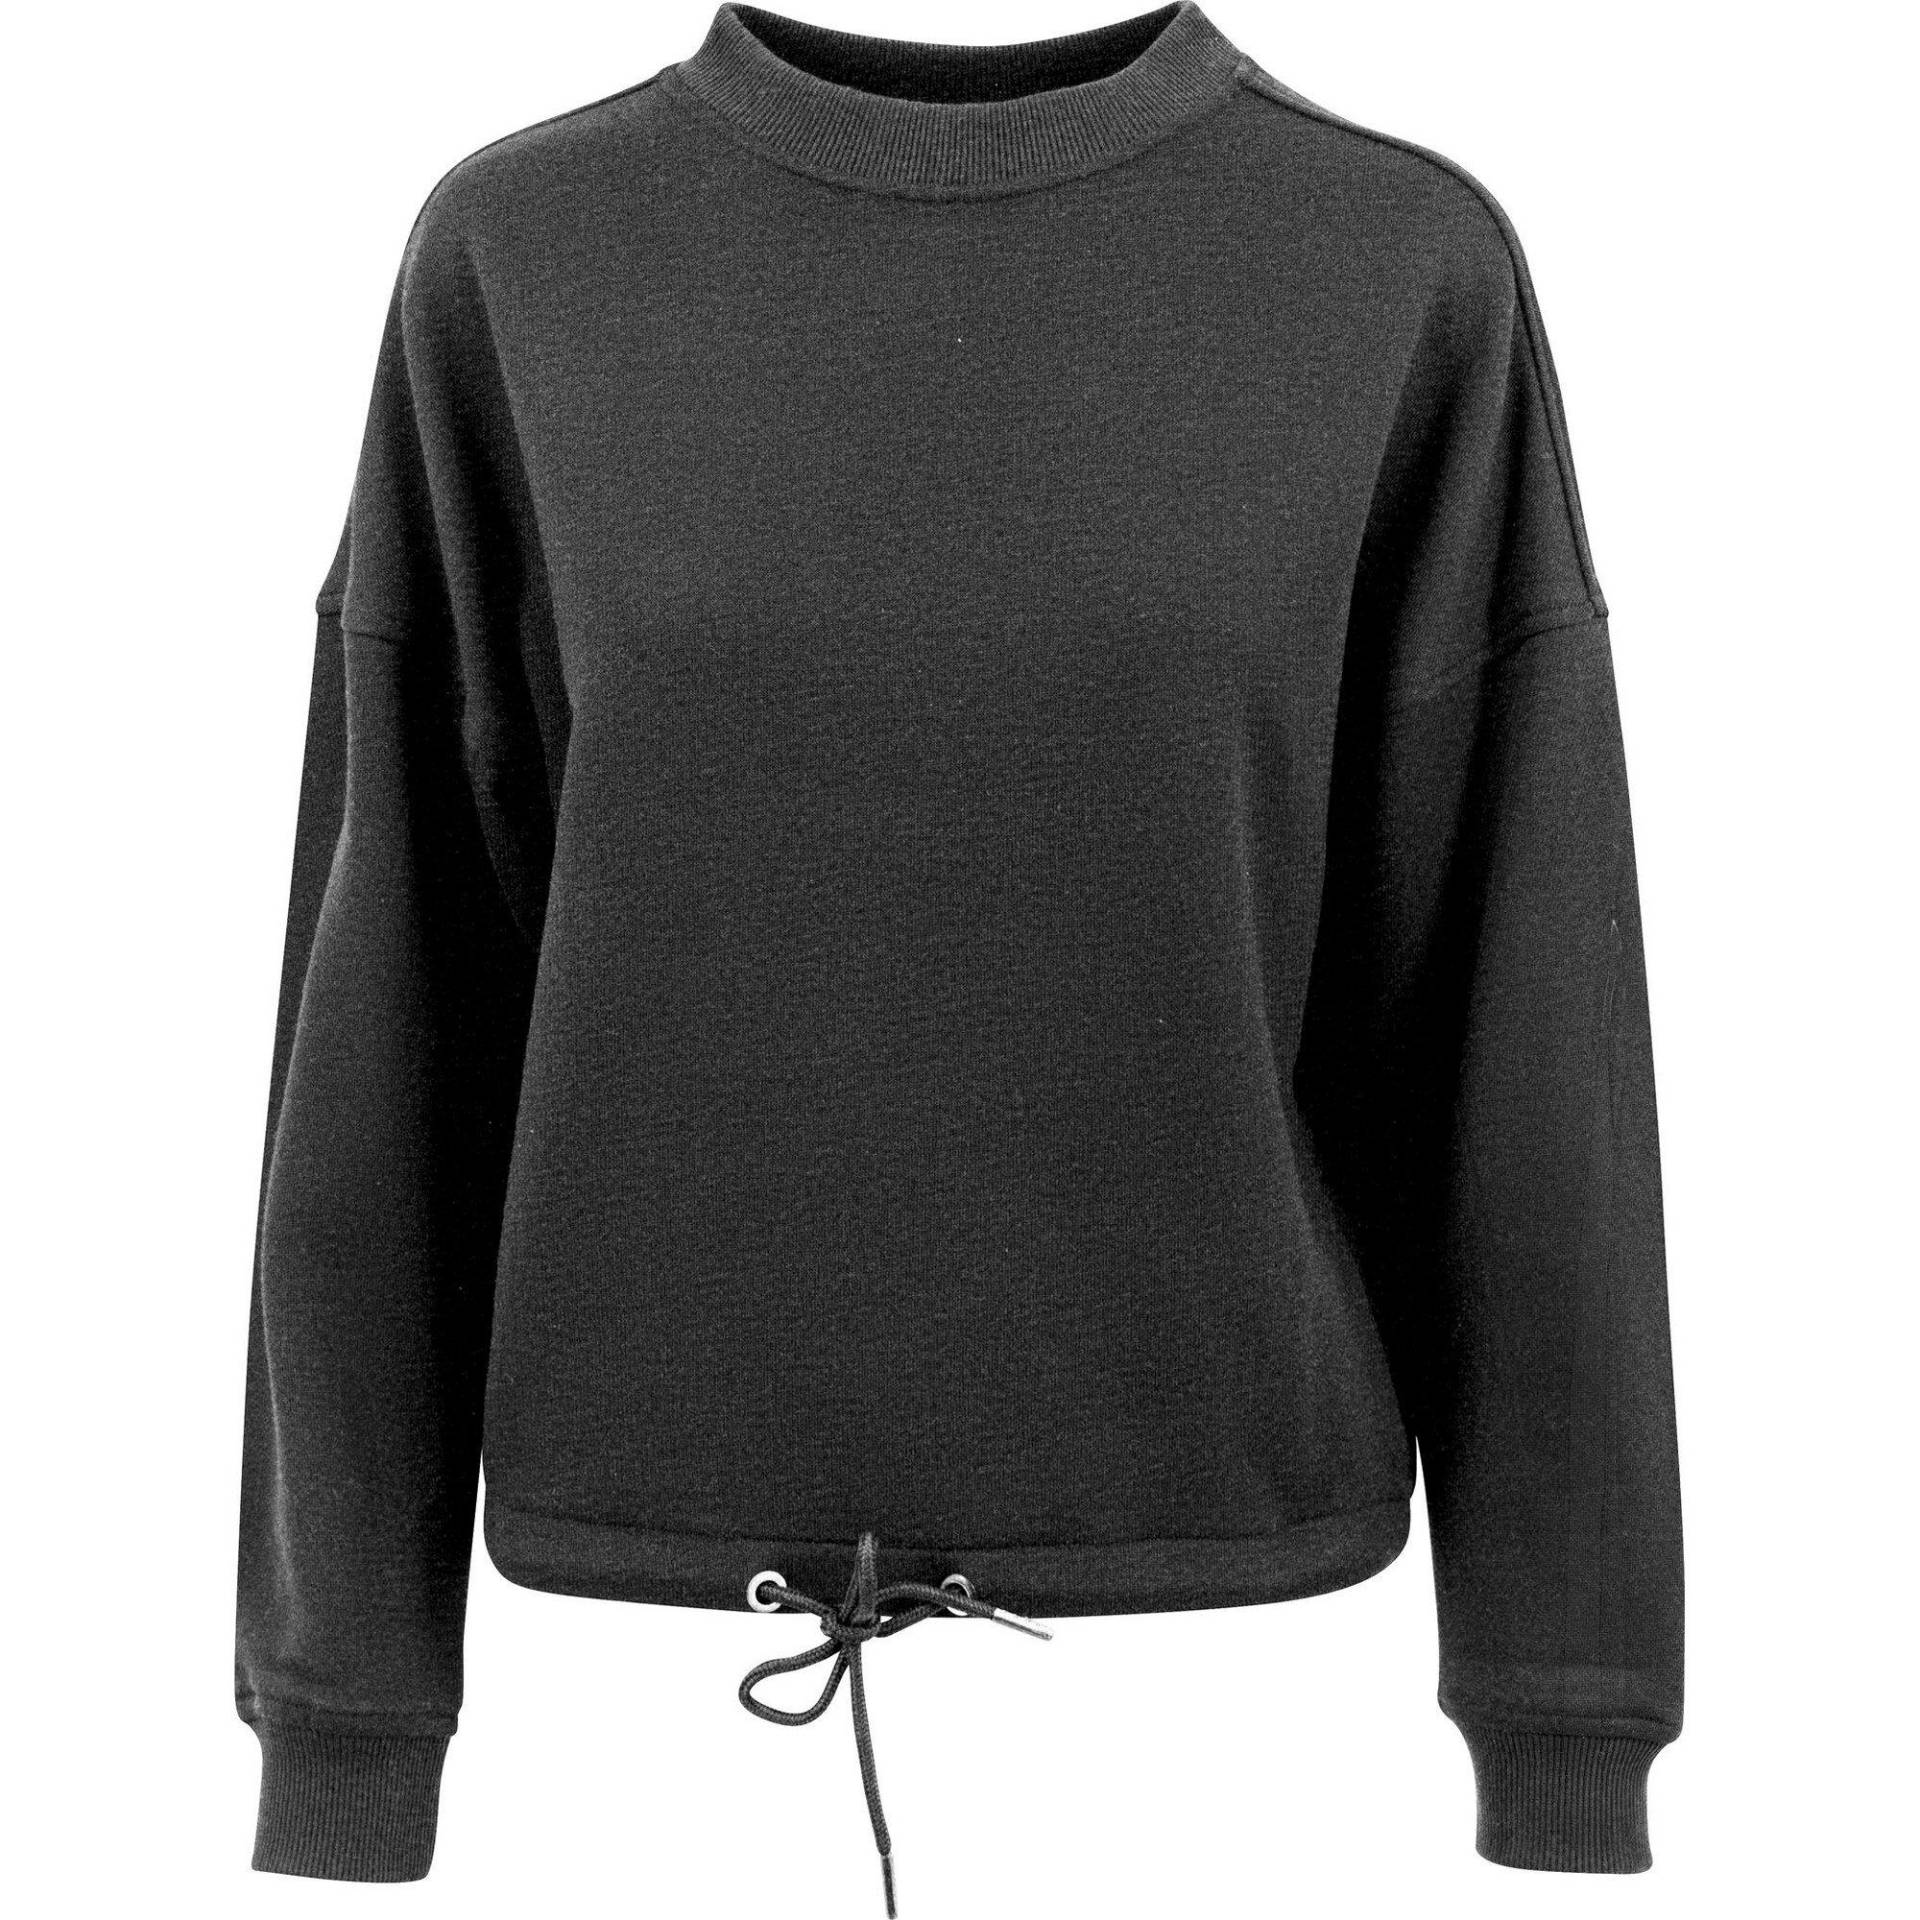 Oversizesweatshirt Mit Rundhalsausschnitt Damen Charcoal Black XS von Build Your Own